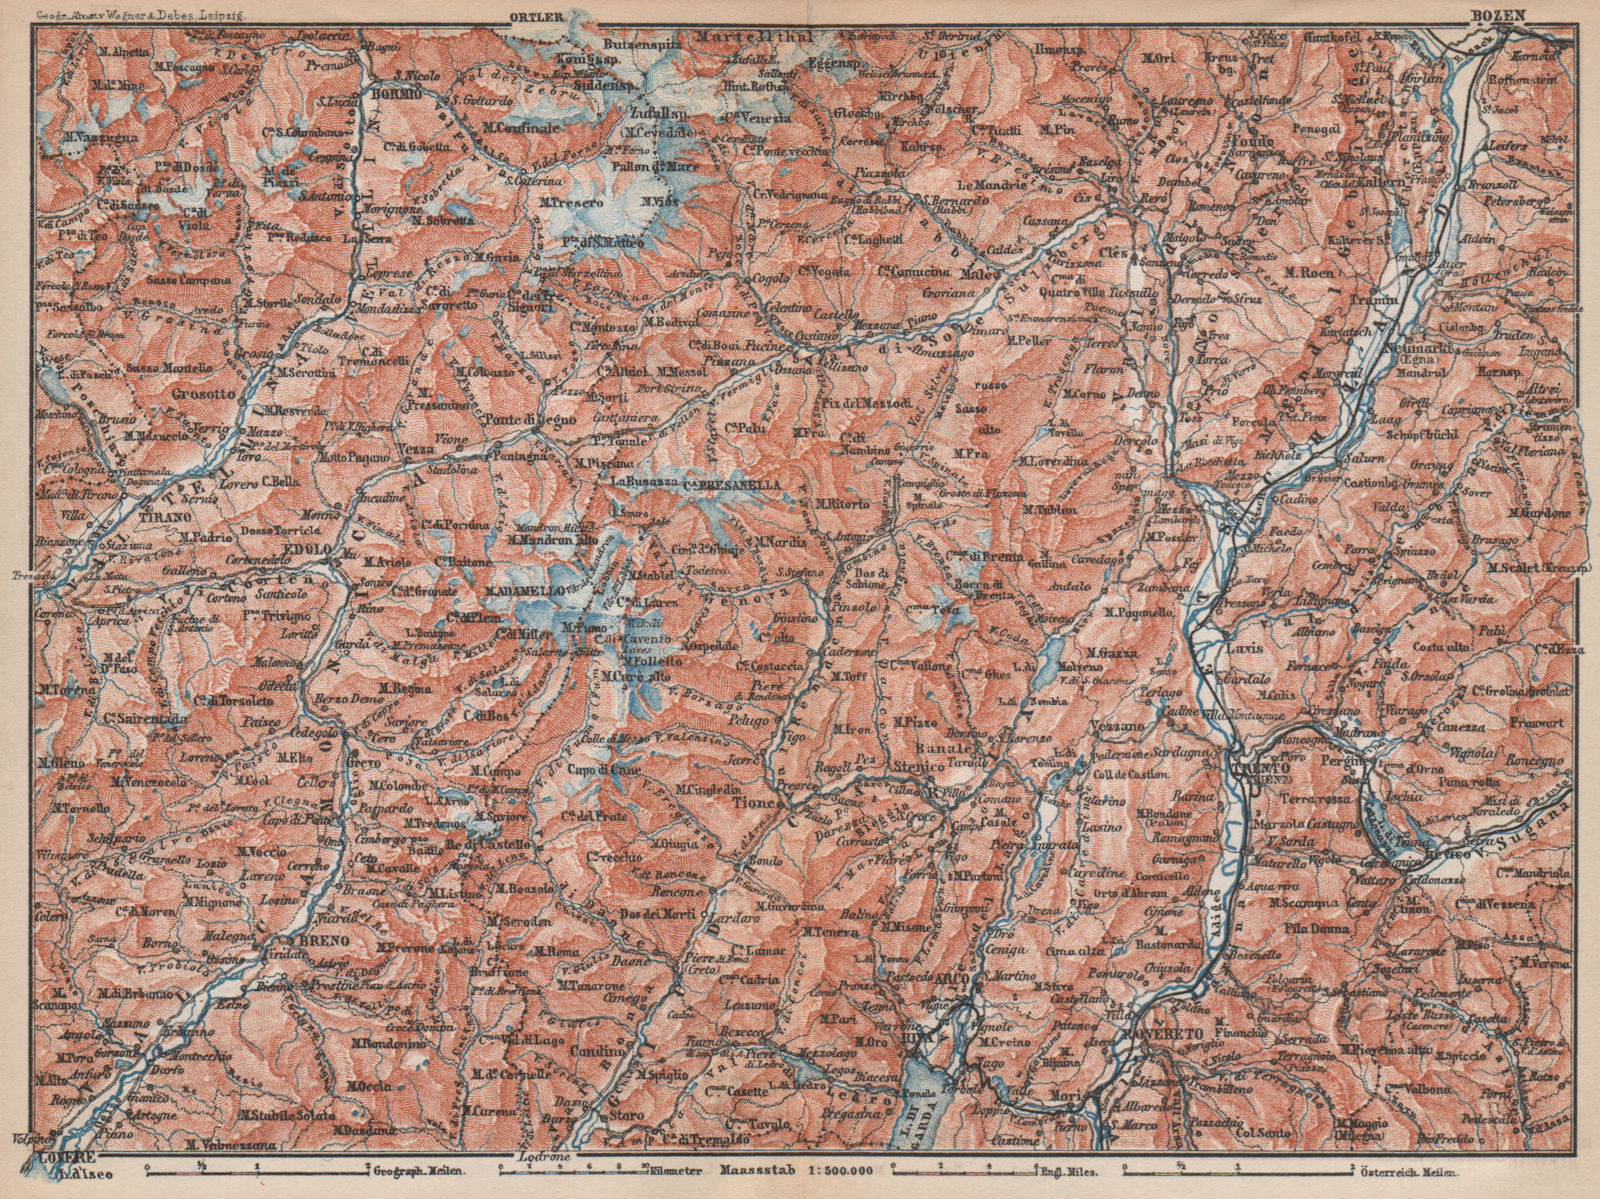 Associate Product TRENTINO-ALTO ADIGE. Bolzano Bormio S. Caterina Aprica Campiglio mappa 1896